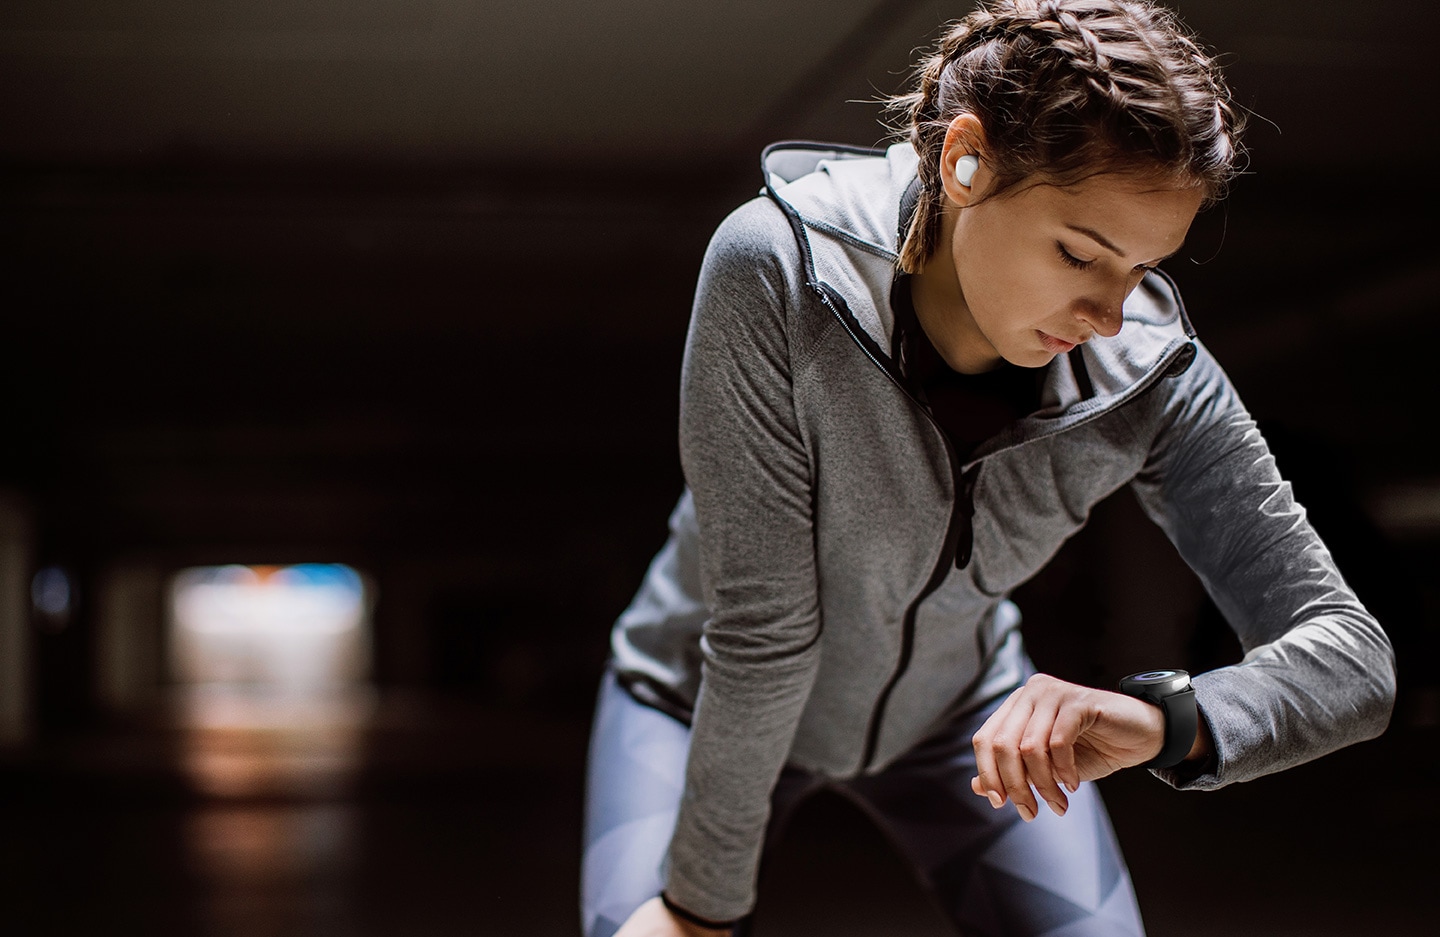 Uma mulher utilizando roupas esportivas flexiona levemente seus joelhos e olha para seu smartwatch Galaxy Watch Active no pulso esquerdo. Na orelha direita dela, é possível visualizar um Galaxy Bud branco.